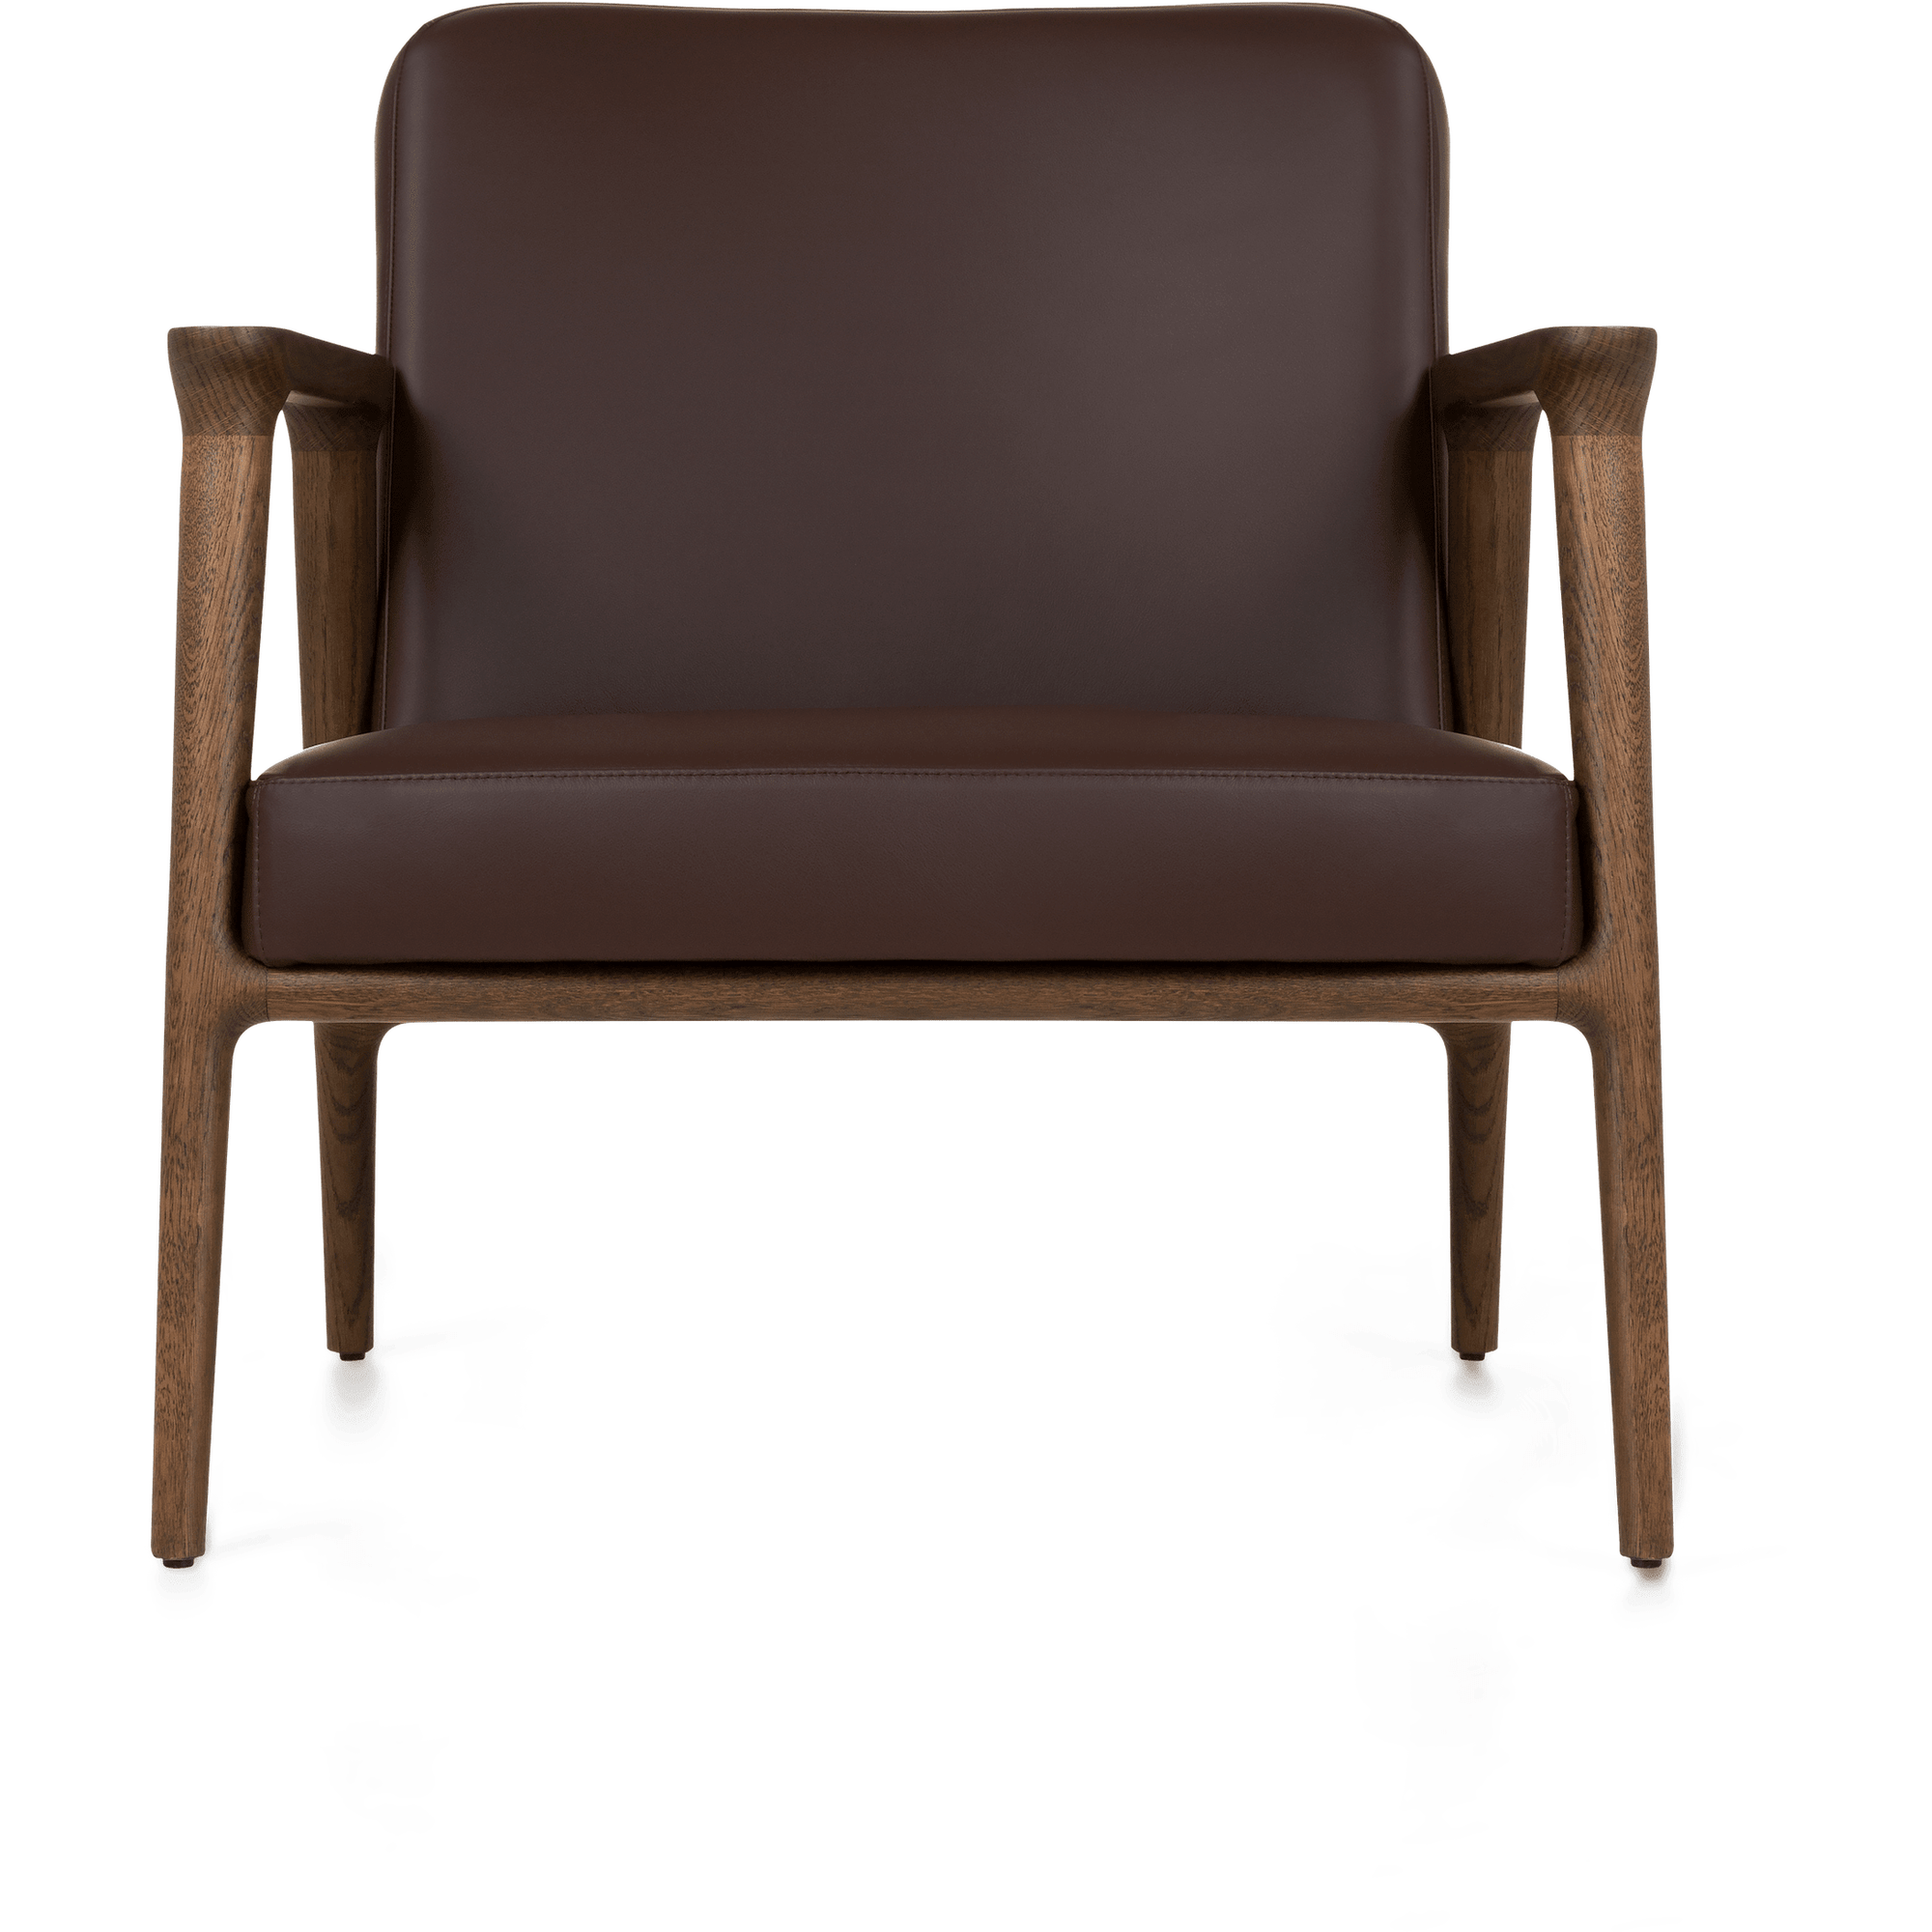 Zio Lounge Chair - Curated Furniture $2000+, armchair, blue, brown, chair, lounge chair, Moooi, Print